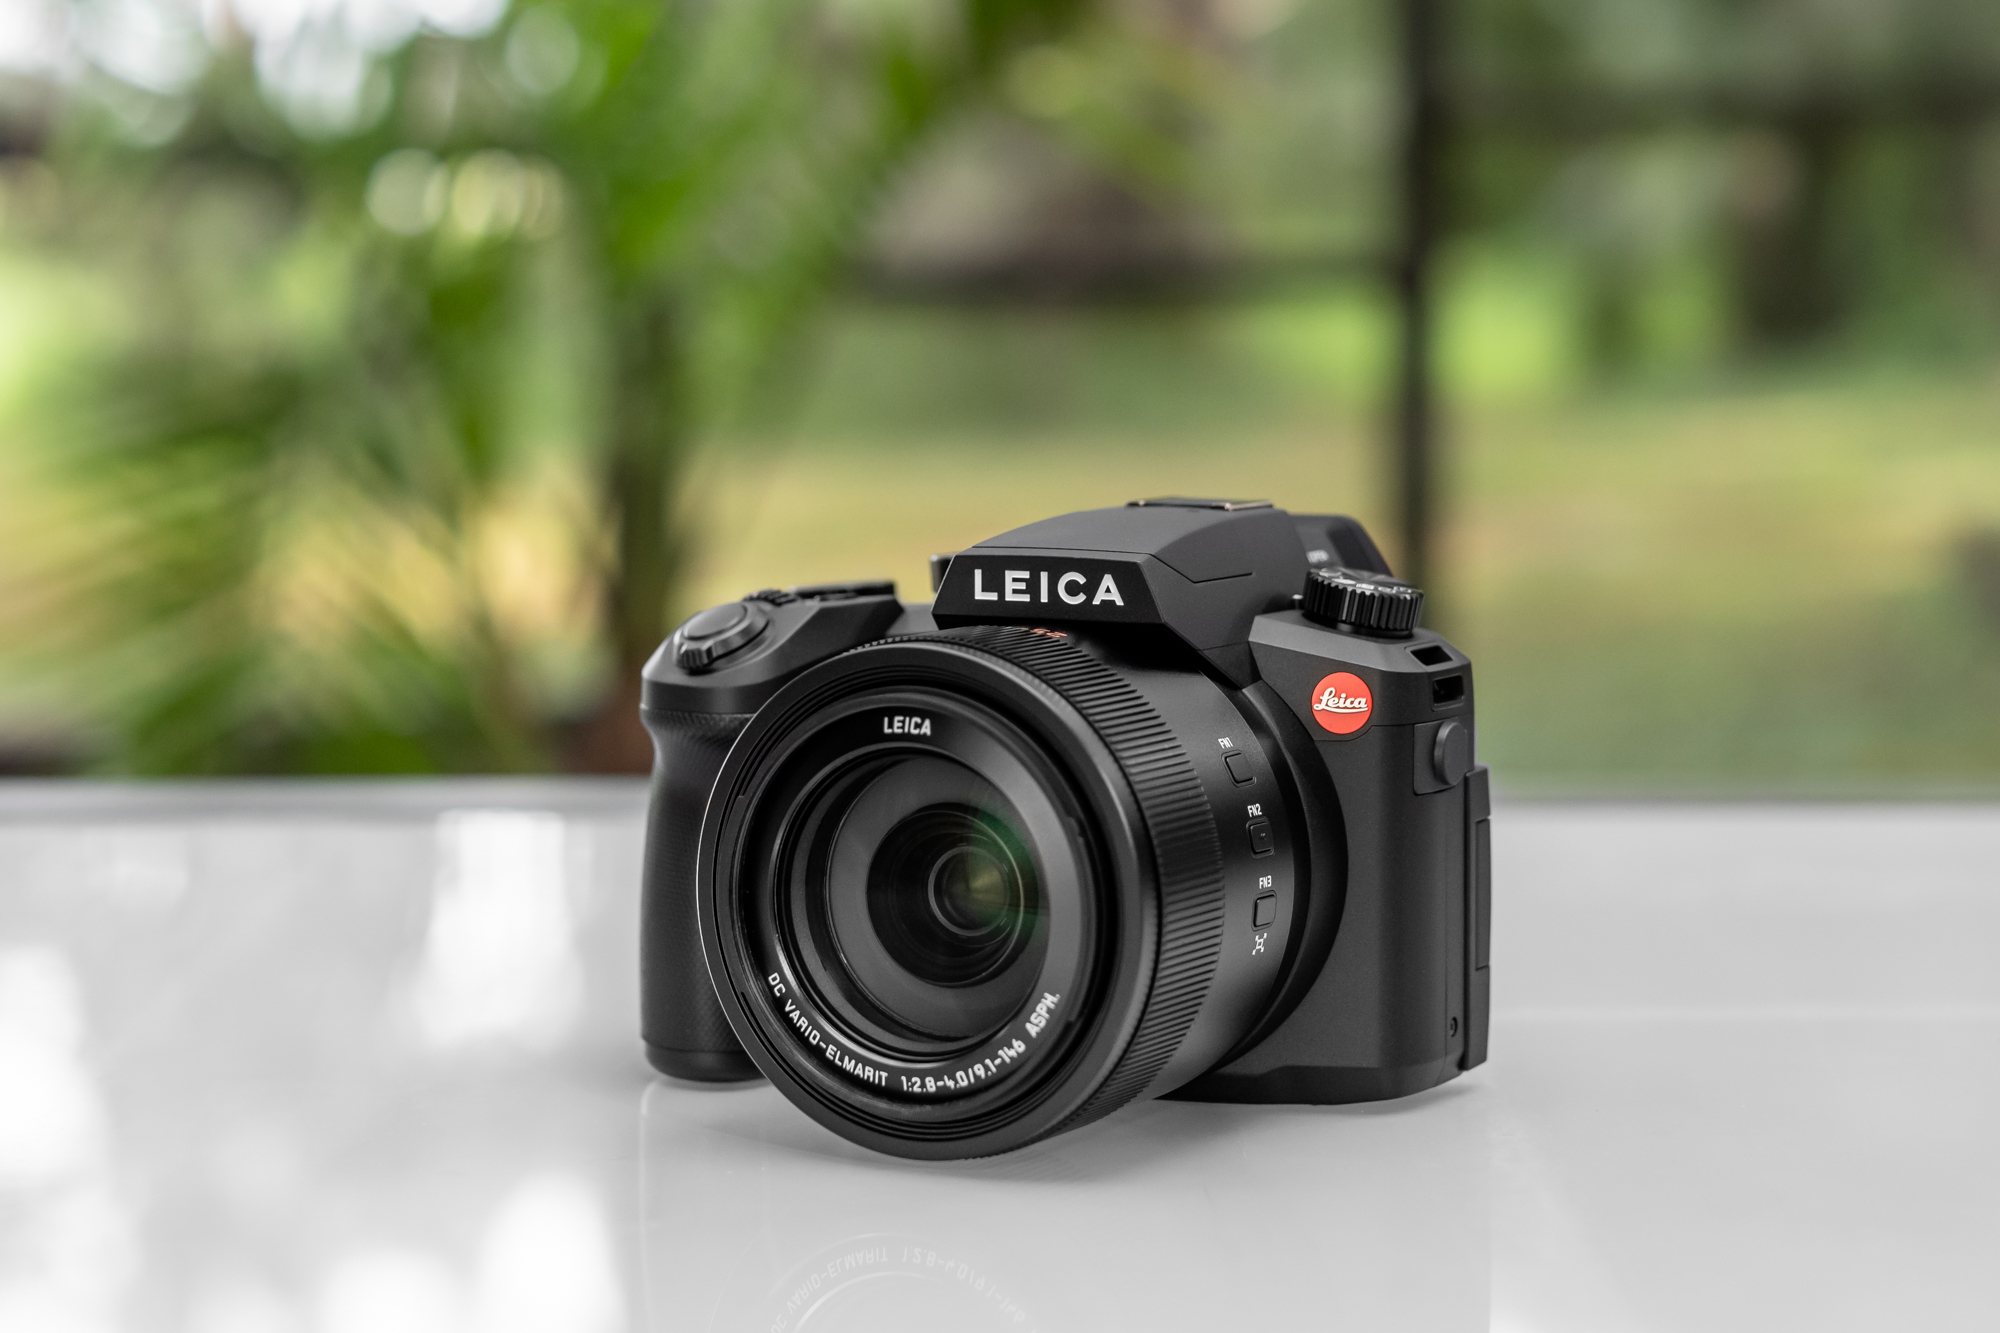 Leica v lux 2 примеры фото